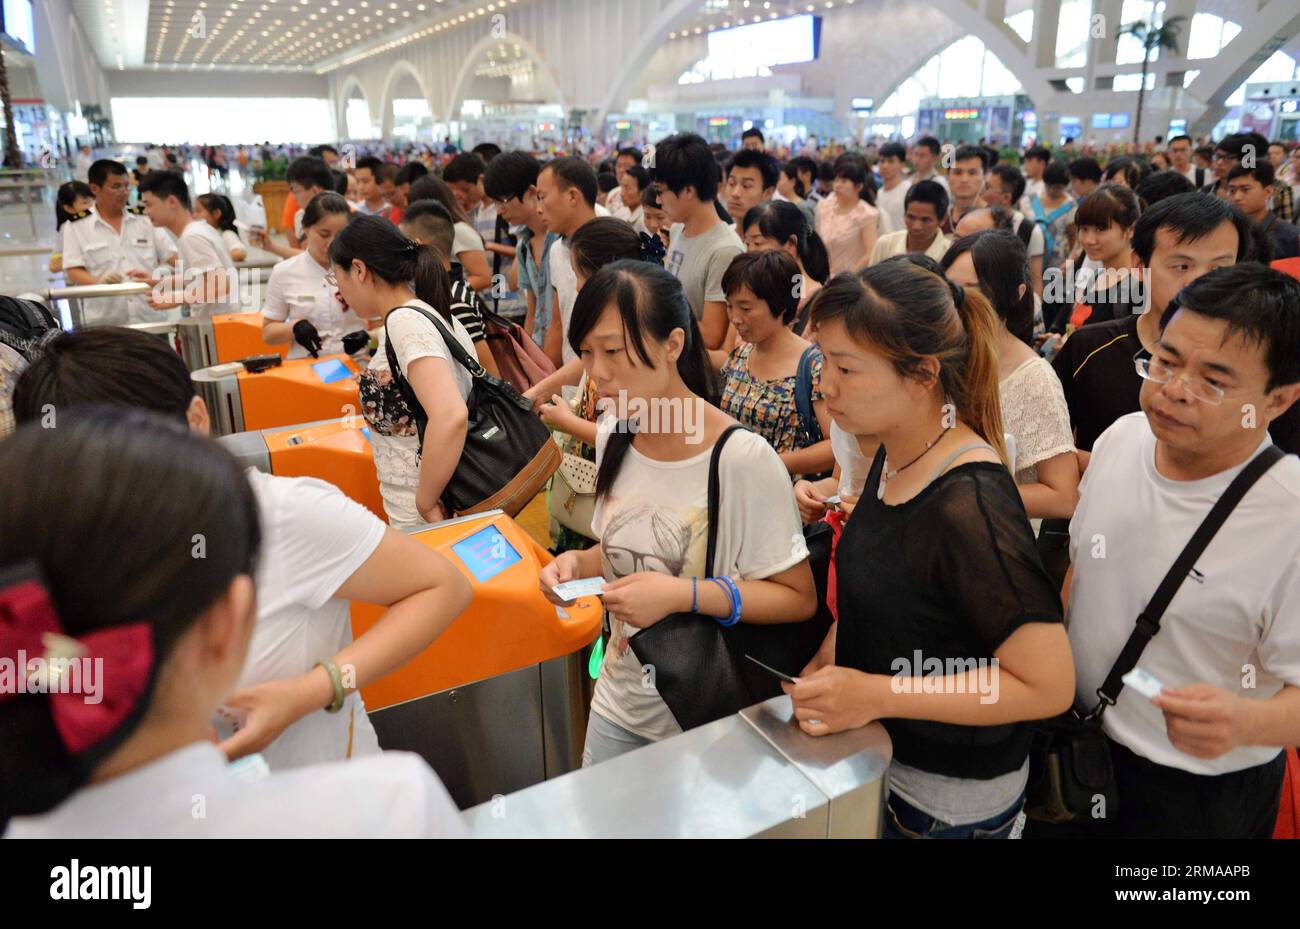 140629) -- SHIJIAZHUANG, June 29, 2014 (Xinhua) -- Passengers have